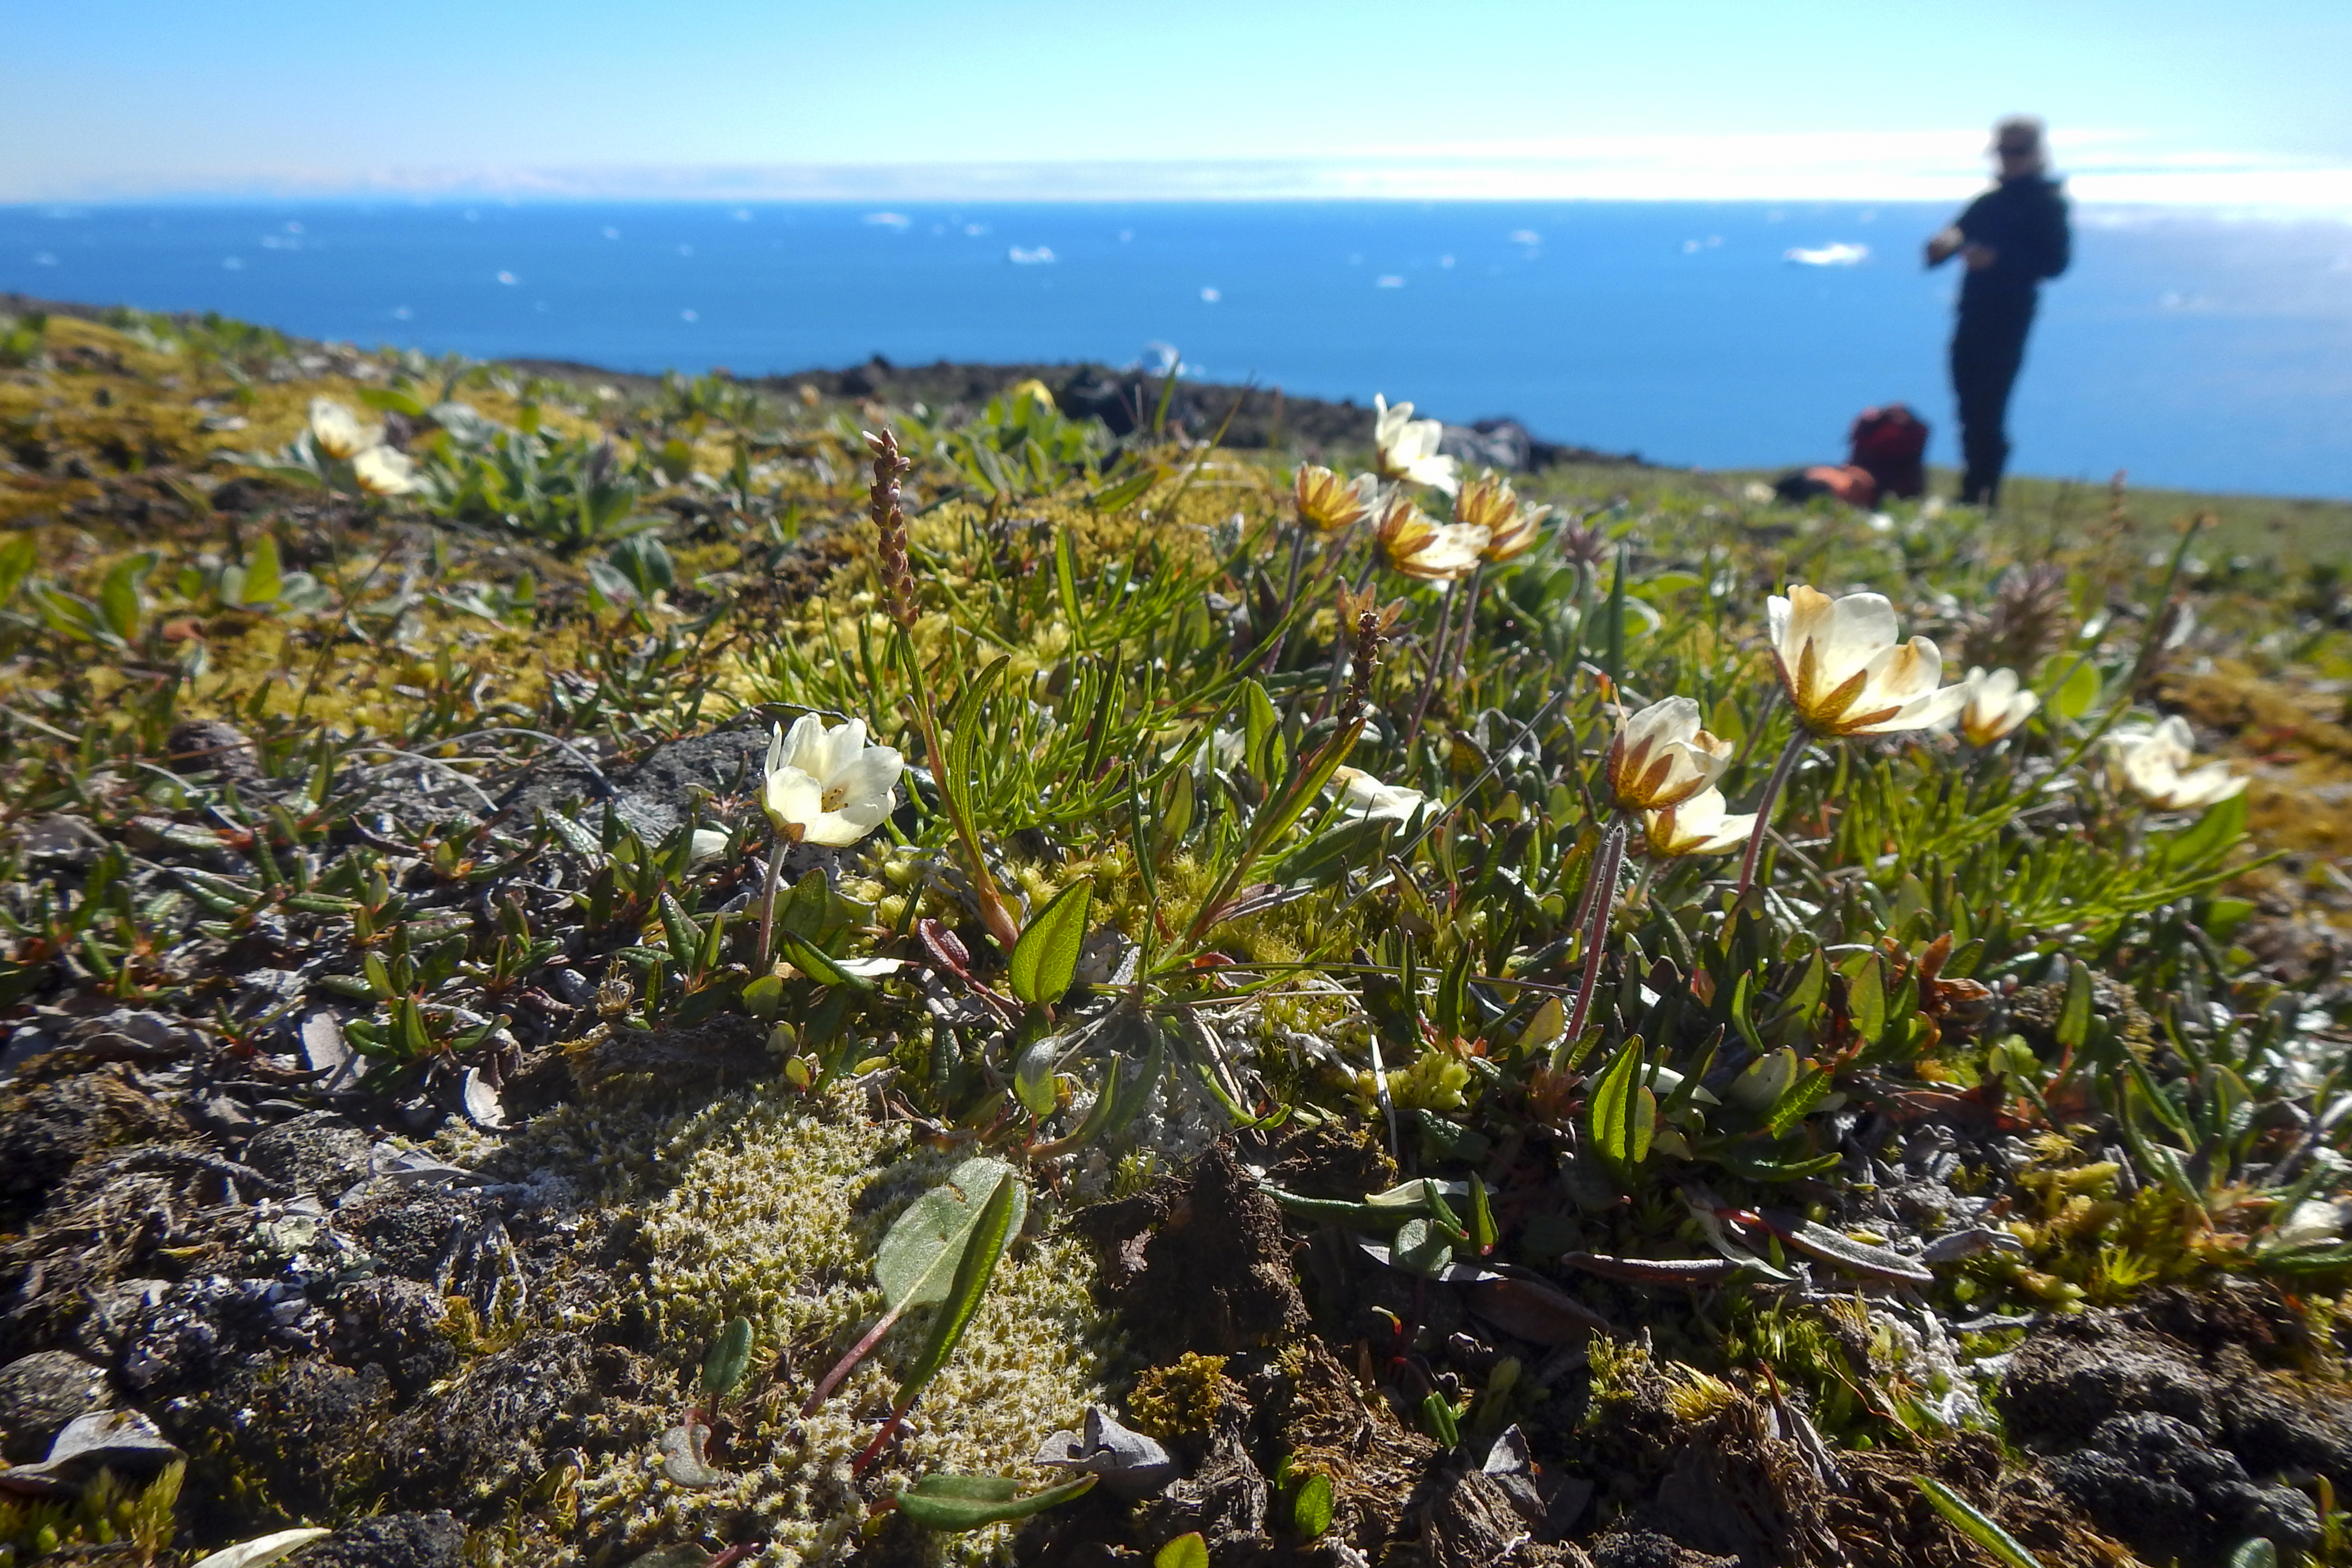 Nærbillede af blomstrende grønlandsk fjeldsimmer ved Disko-øens kyst, med havet i baggrunden.